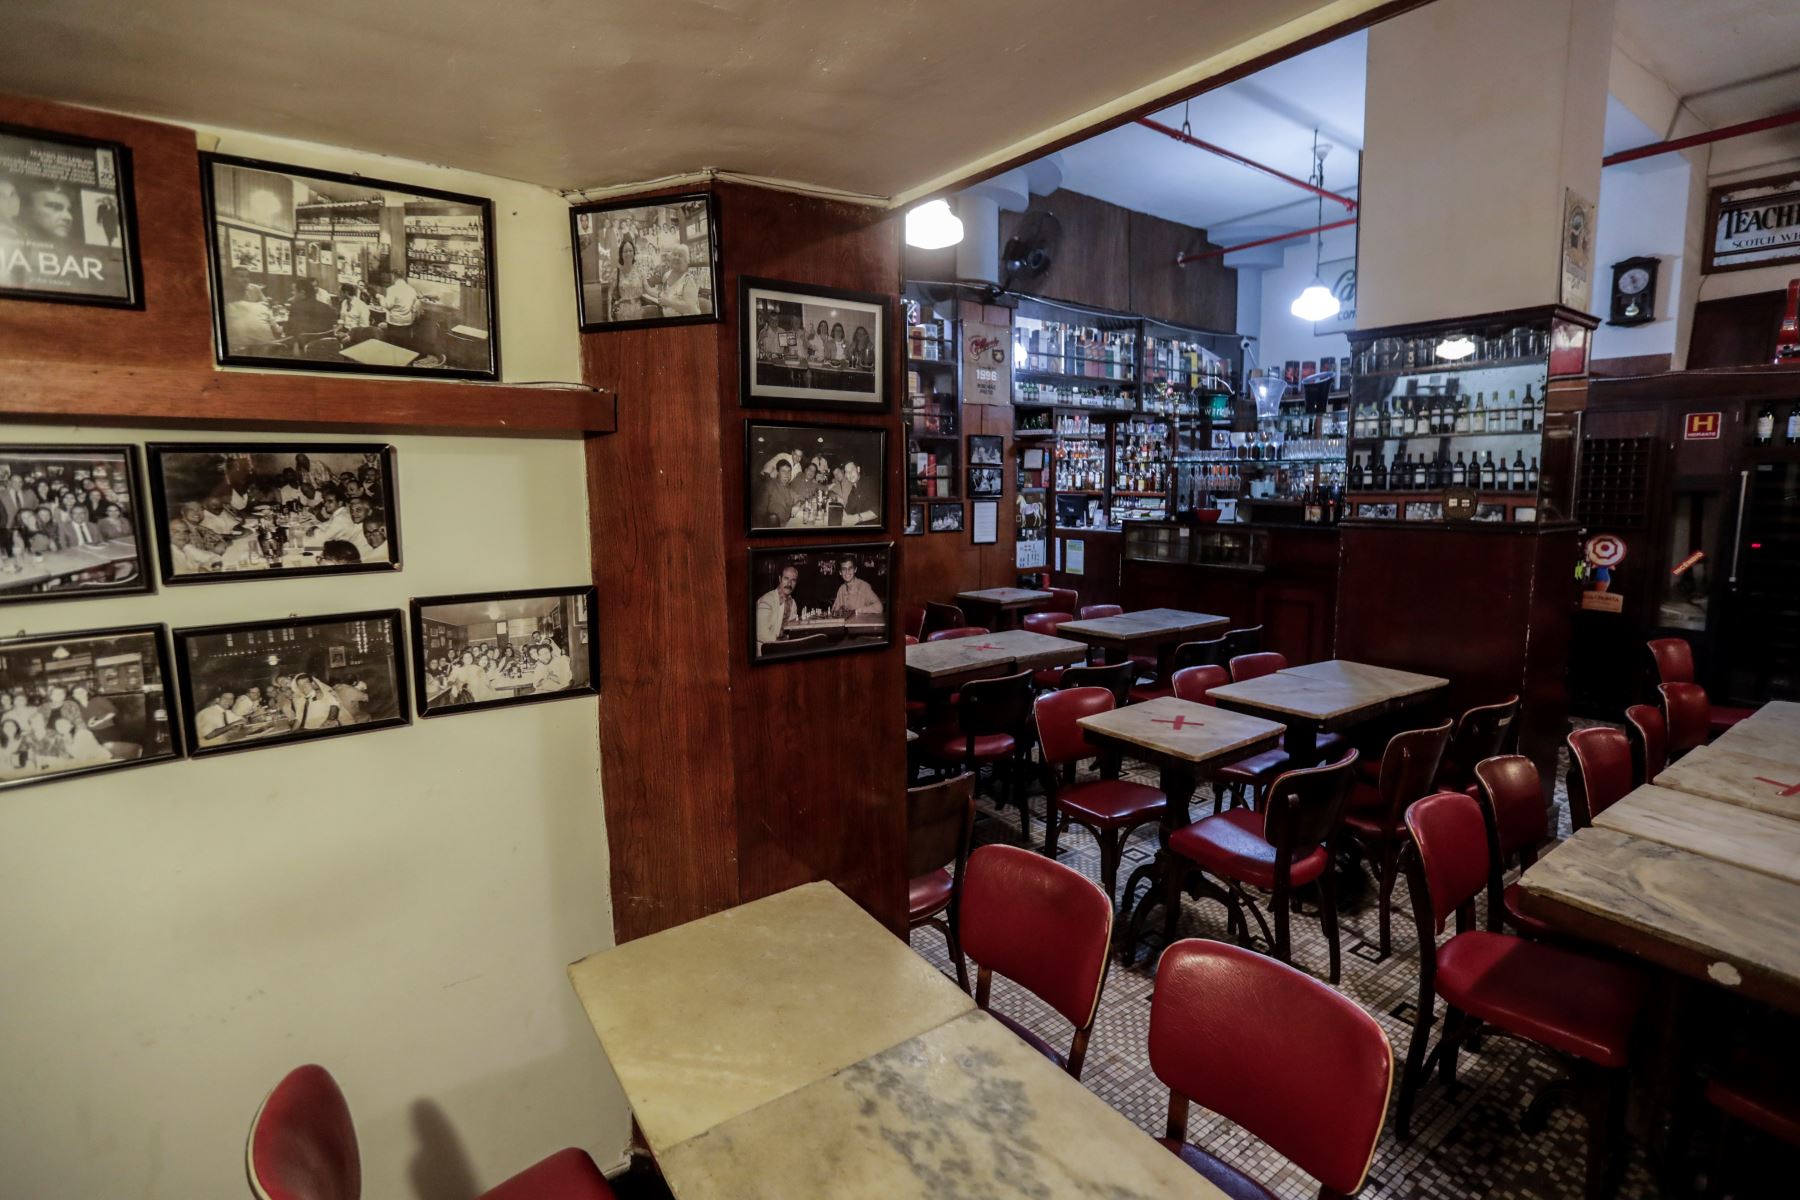 Casa Villarino, el bar fundado por inmigrantes españoles en Río de Janeiro, hace casi siete décadas y que durante muchos años fue el principal refugio de bohemios y brasileños intelectualidad, cerró sus puertas debido a la pandemia. Foto: EFE